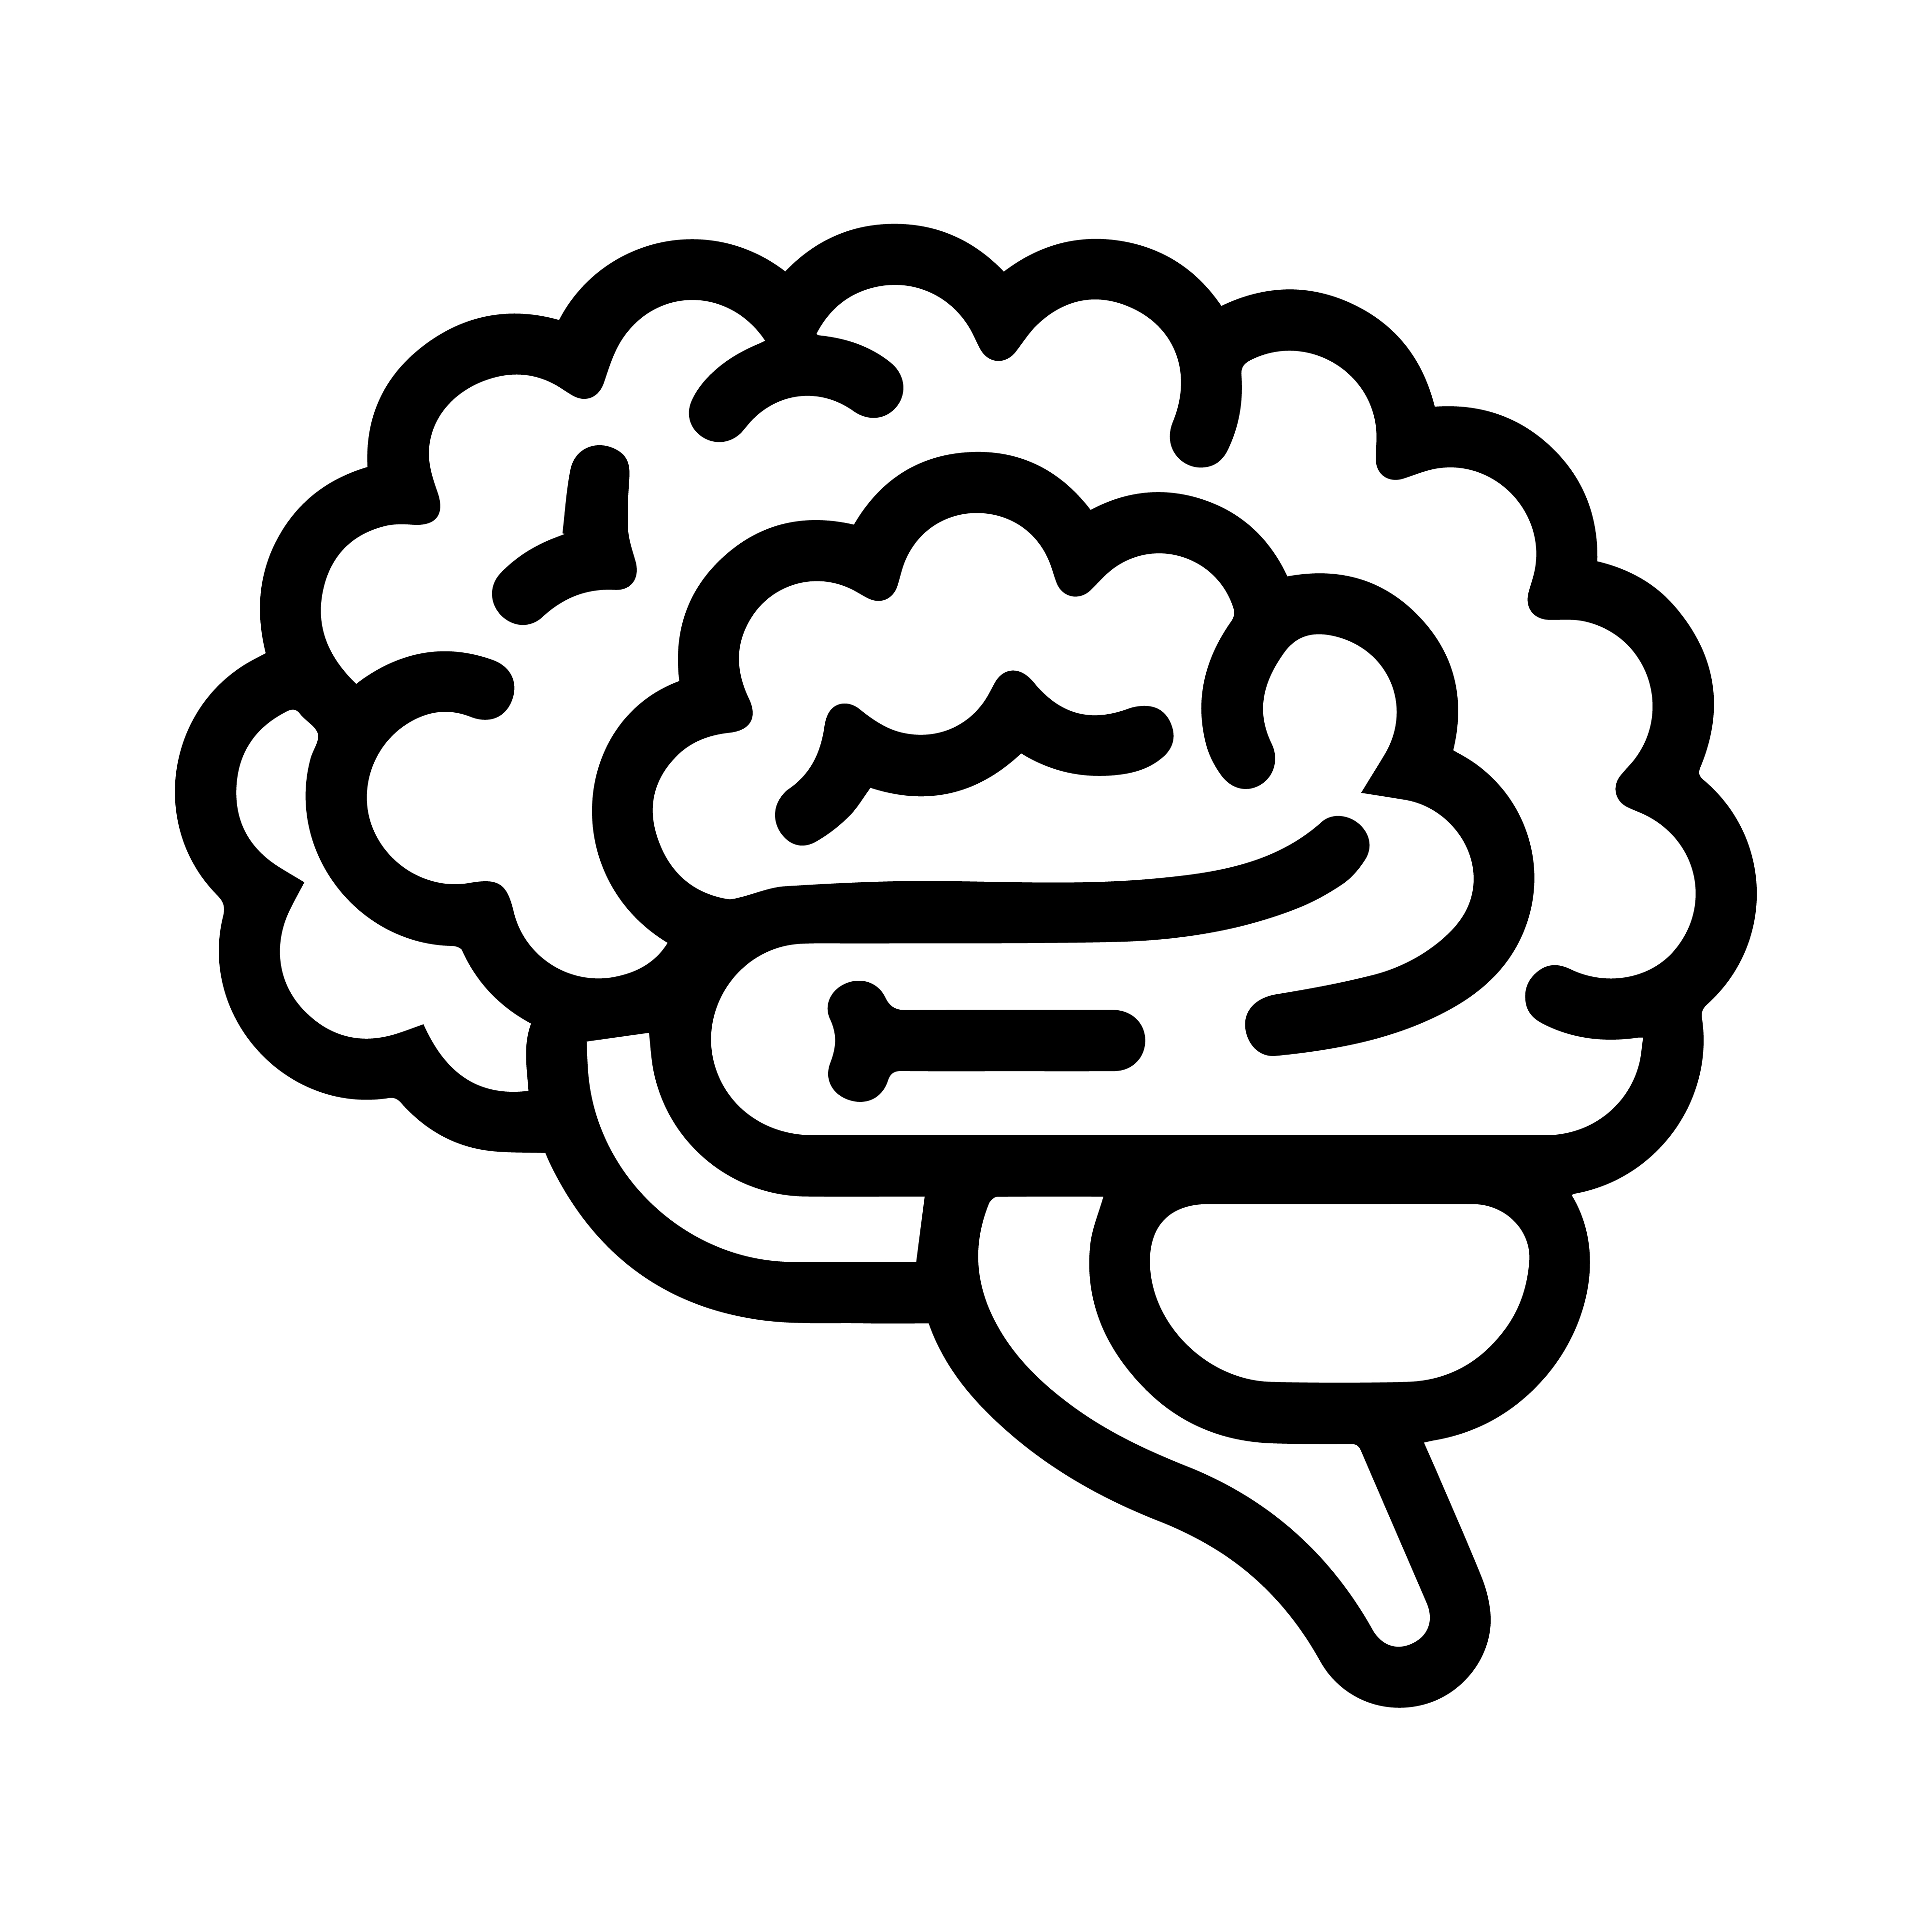 image of brain representing of consumer behavior